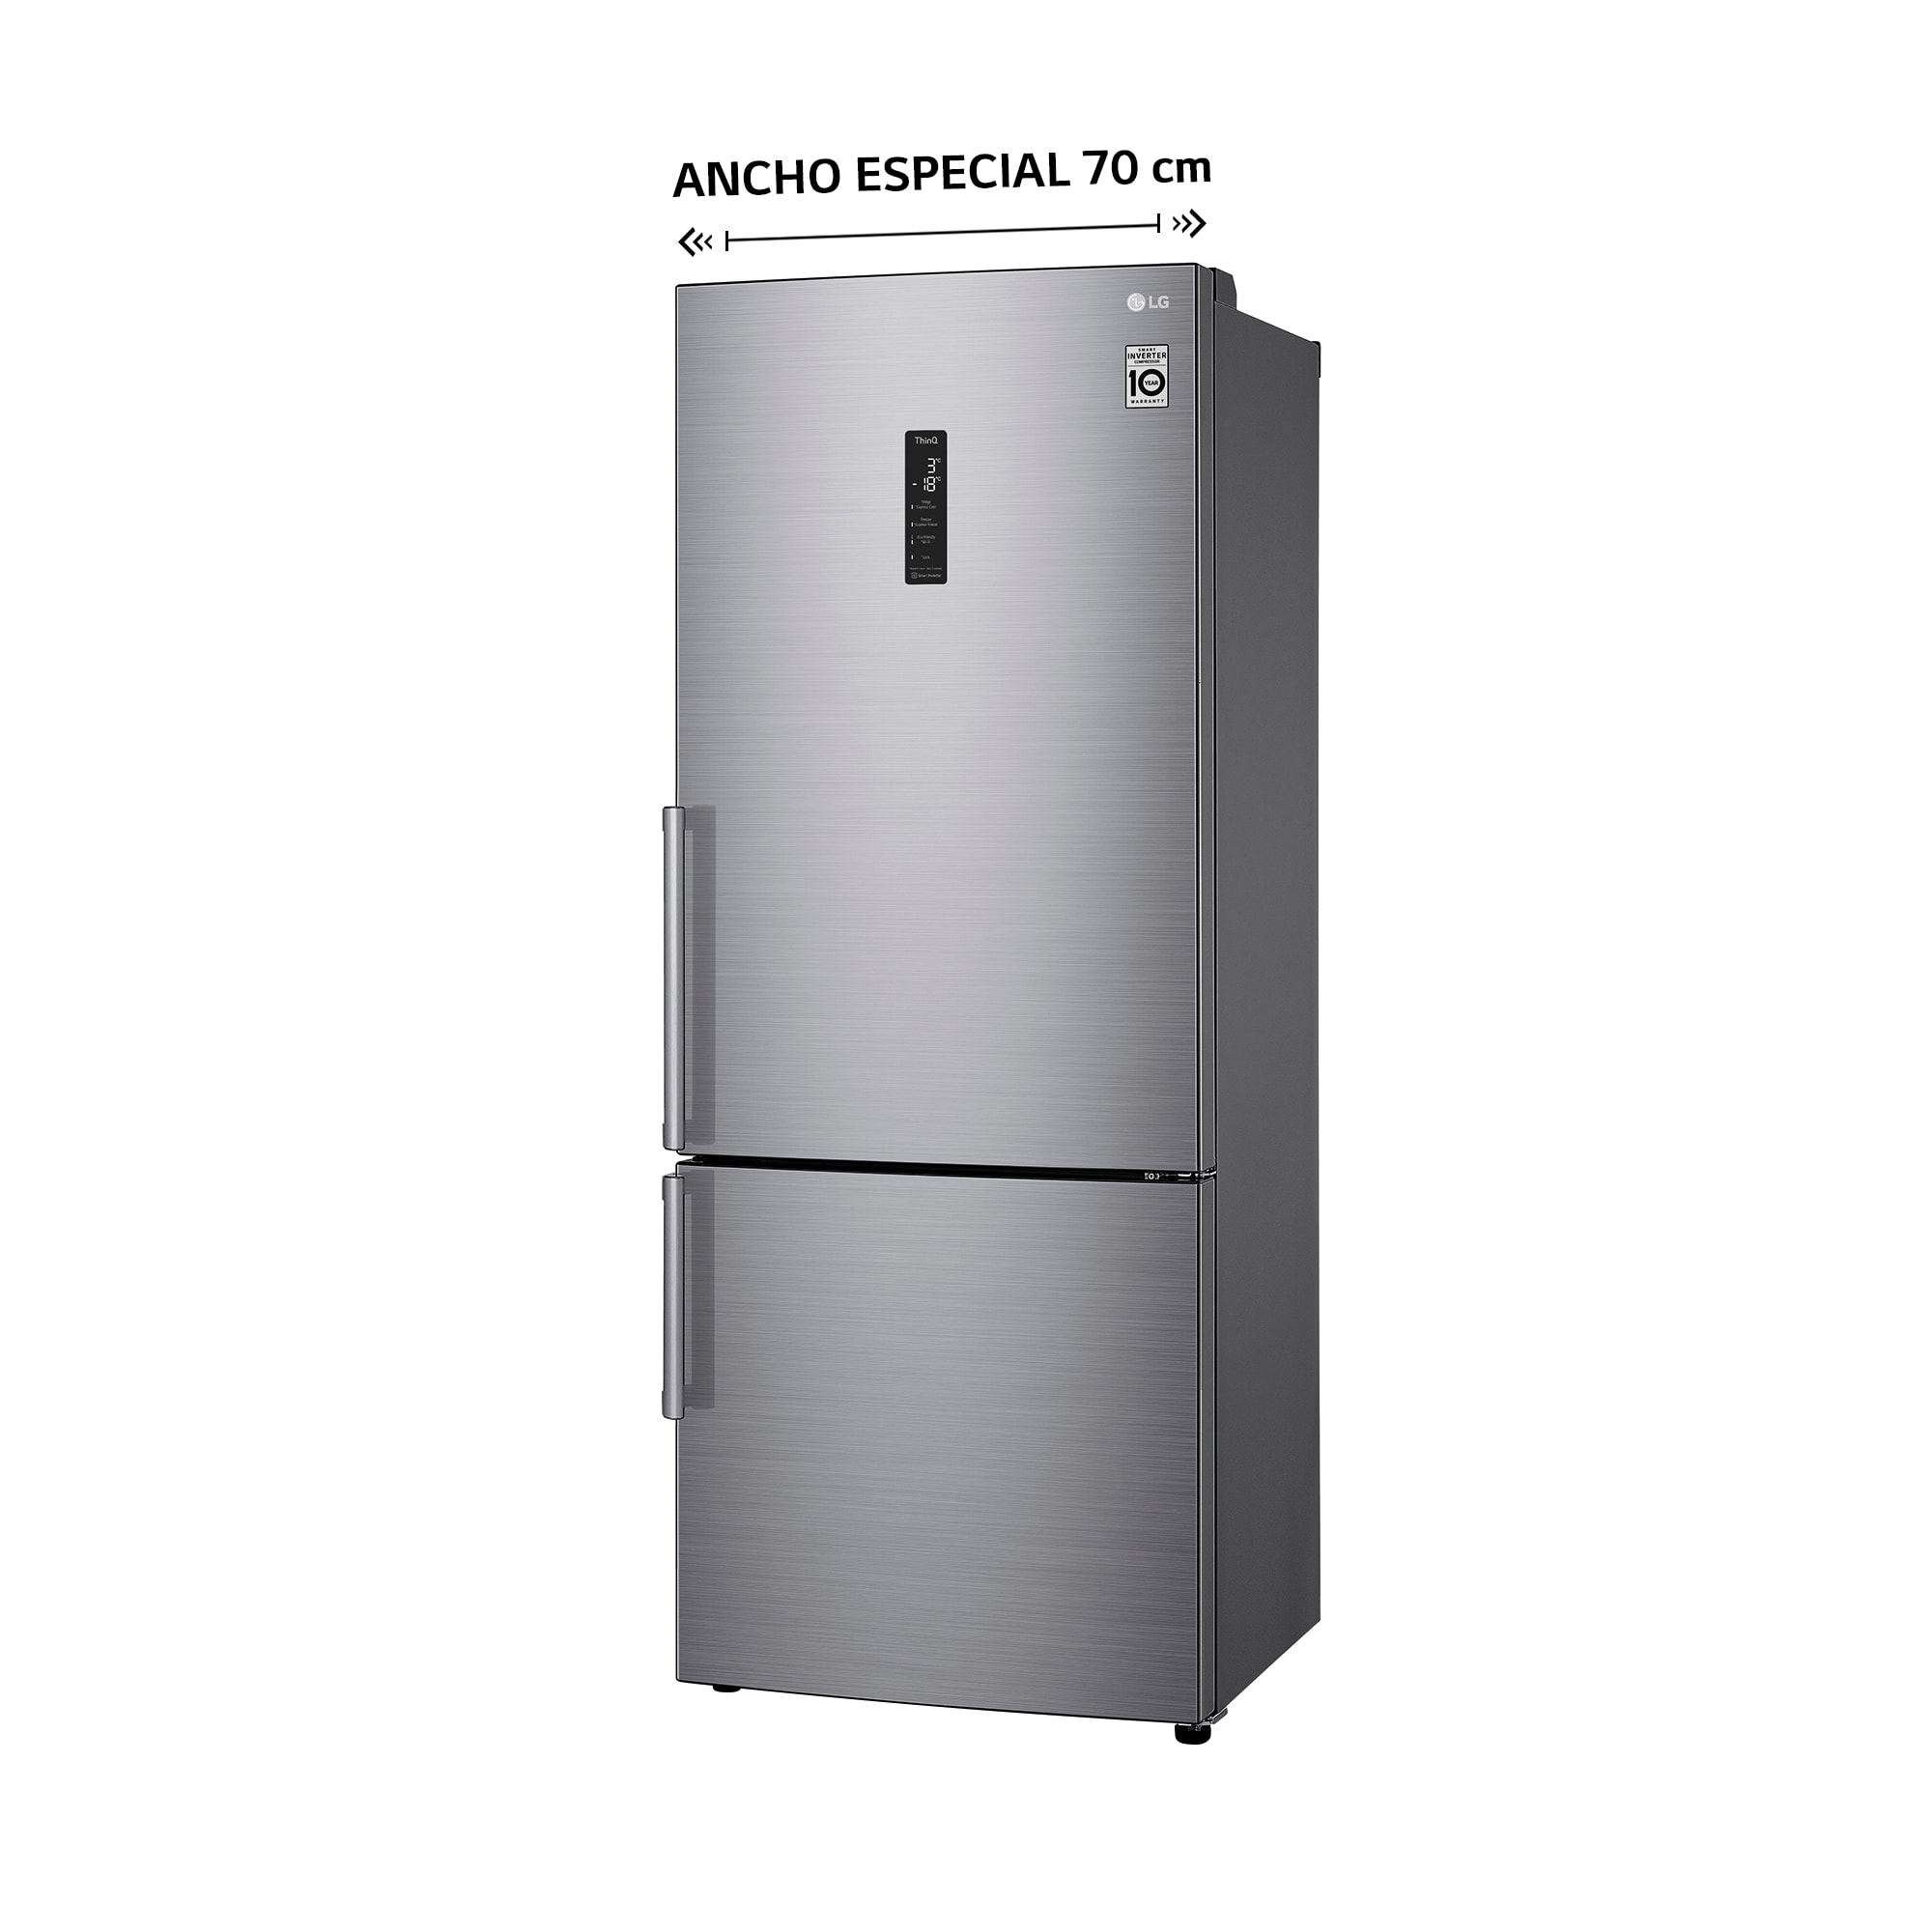 Pando Integral Cooking incorpora dos nuevos modelos de frigoríficos combi  de integración a mueble con medidas L (ancho 60cm) y XL (ancho 70cm) con  1,94 metros de altura en su gama de